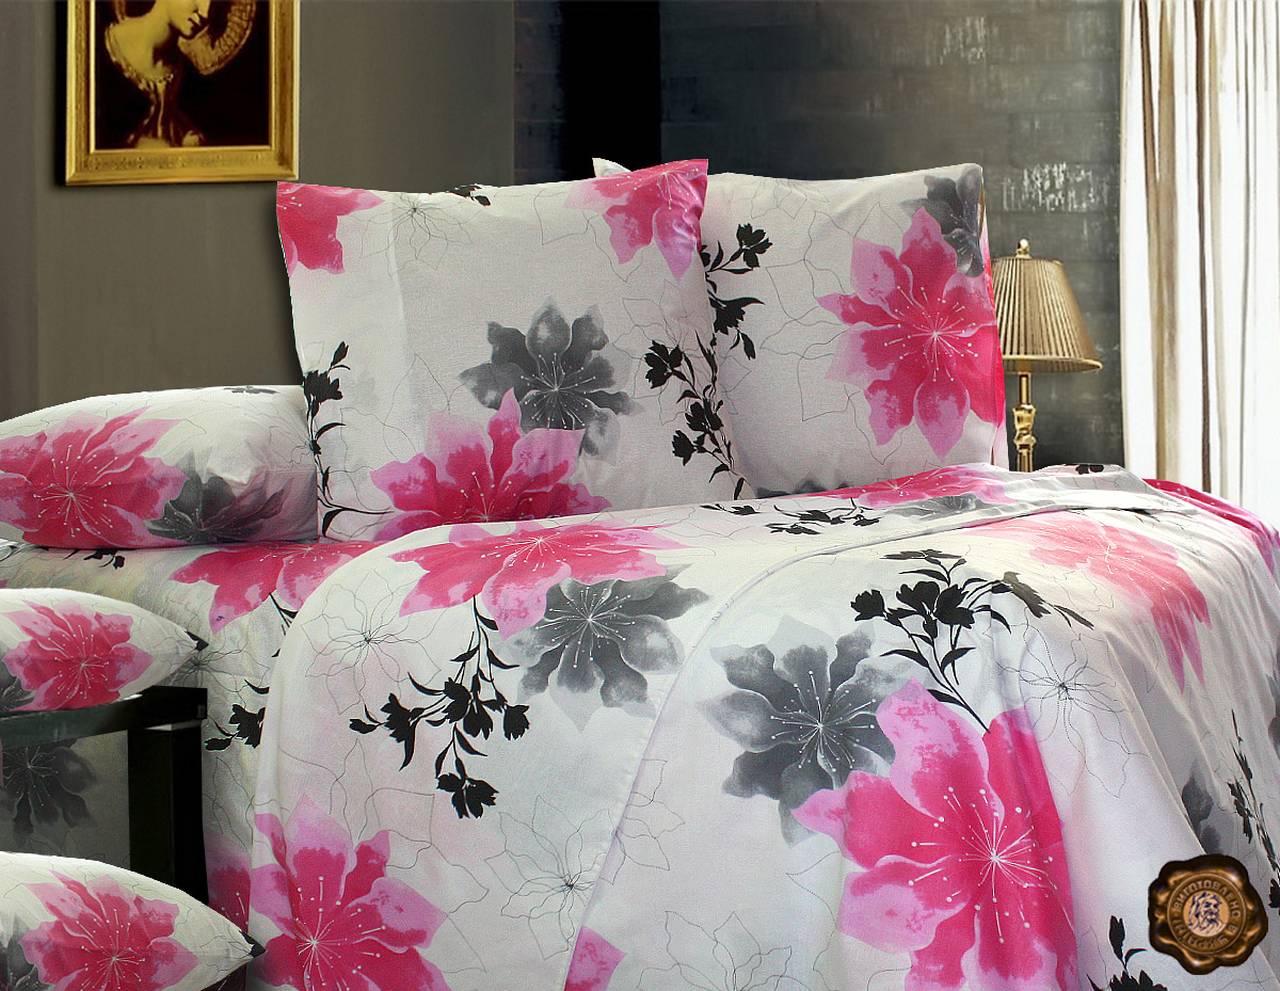 

Семейный постельный комплект Т0203 Еней-Плюс, цвет: белый, розовый